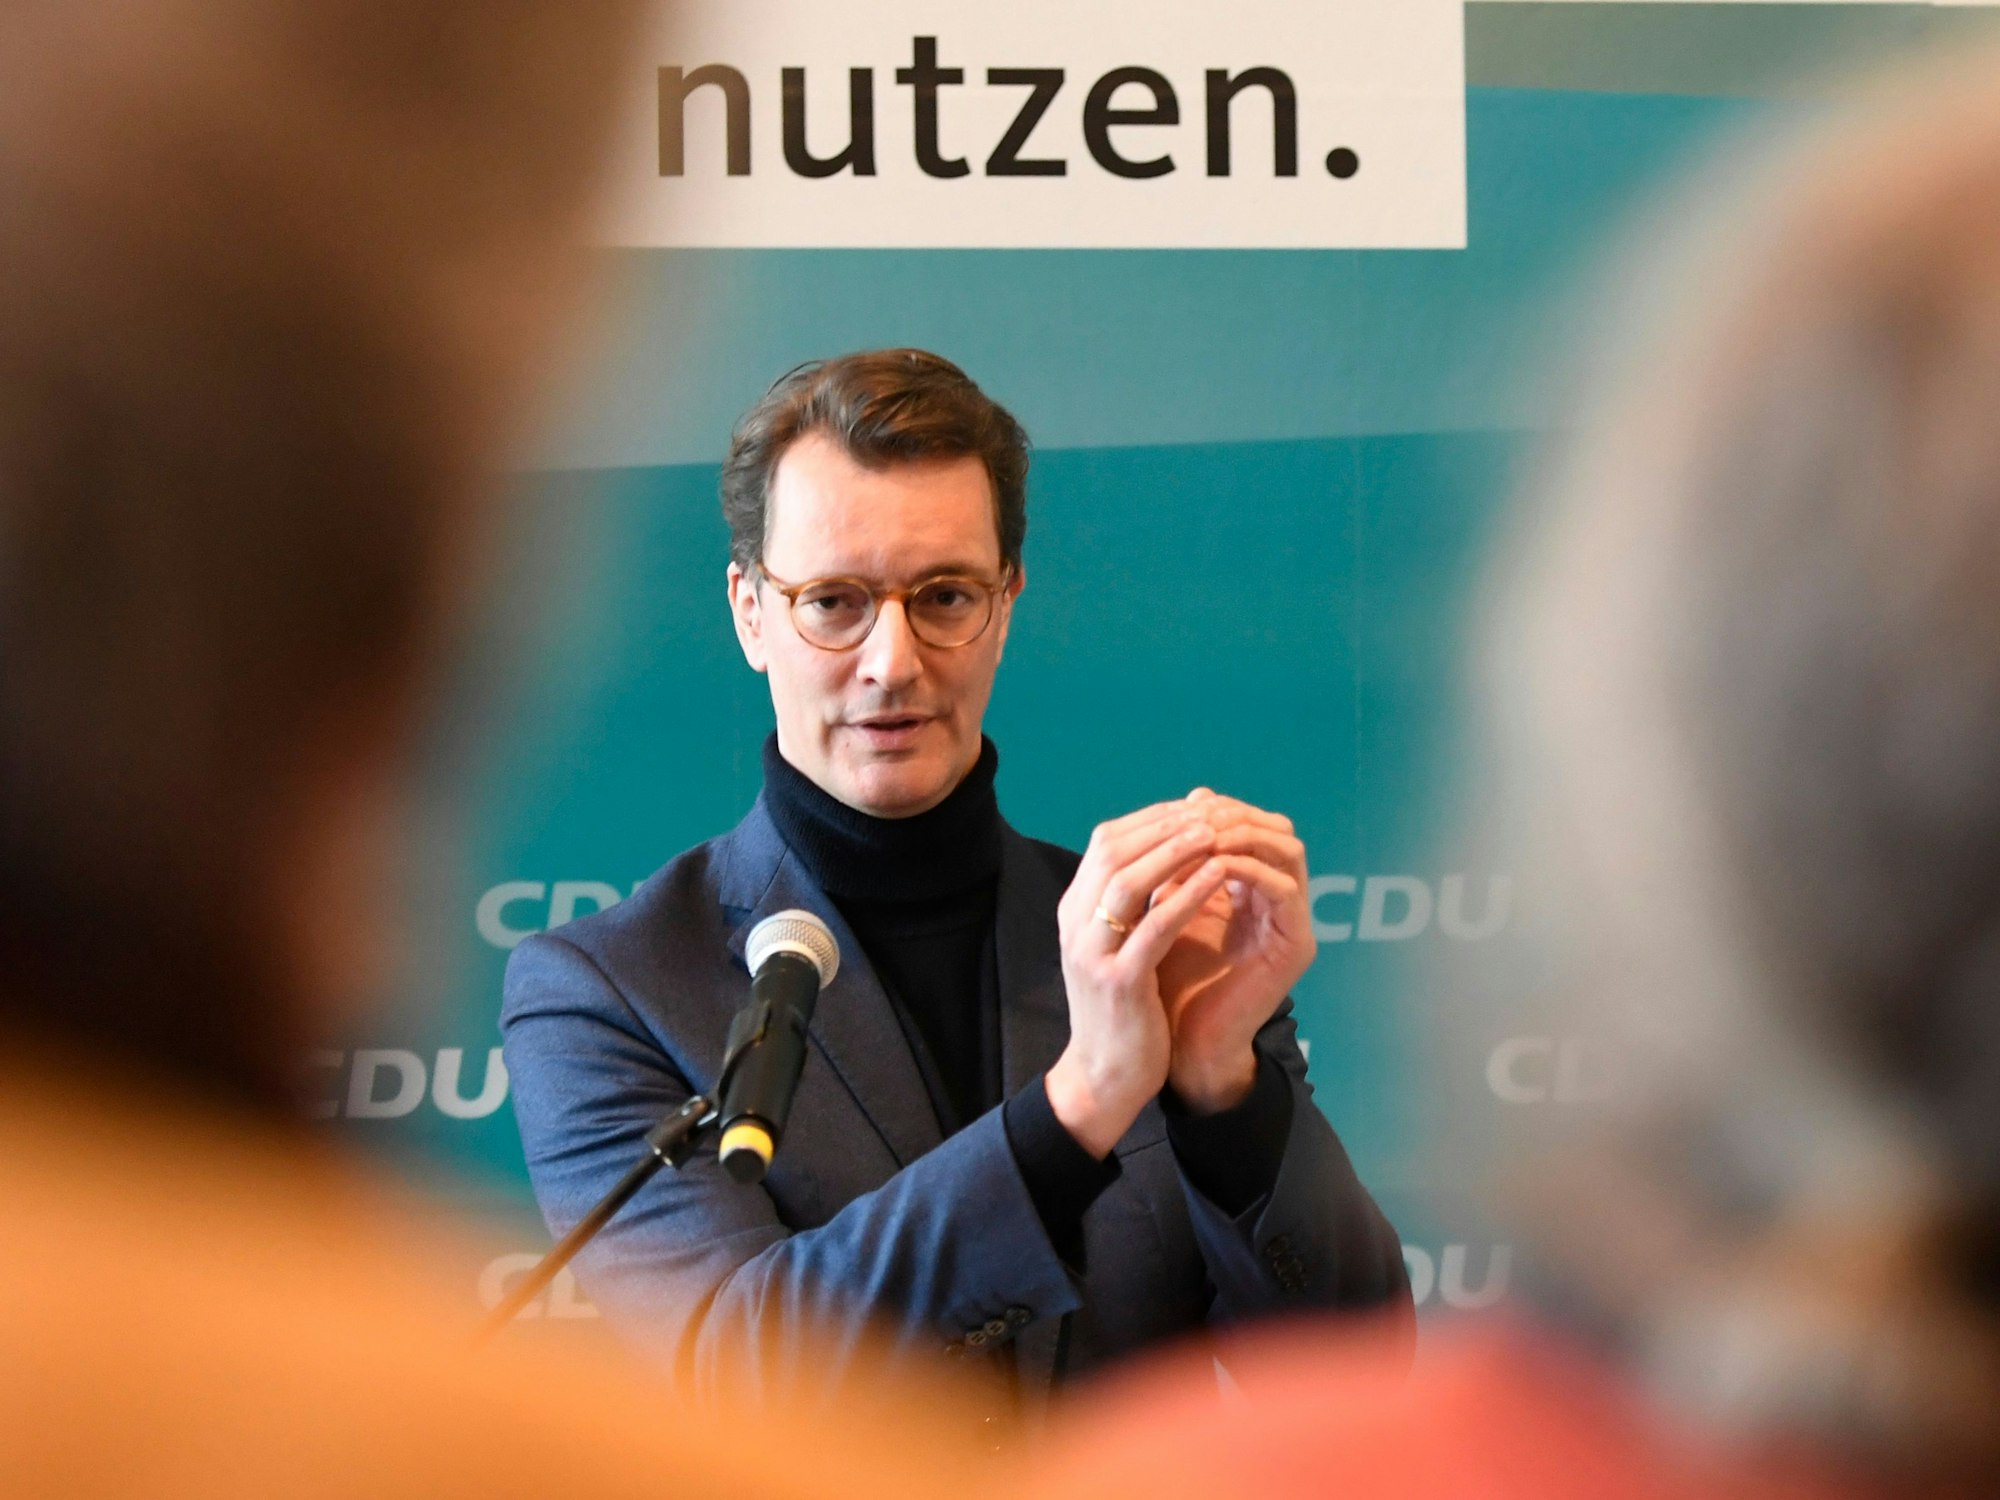 Hendrik Wüst (CDU), Ministerpräsident und Vorsitzender der CDU in NRW, unterrichtet die Presse über die Ergebnisse einer Klausurtagung der Spitzen der CDU Nordrhein-Westfalen am 8. Januar 2022.